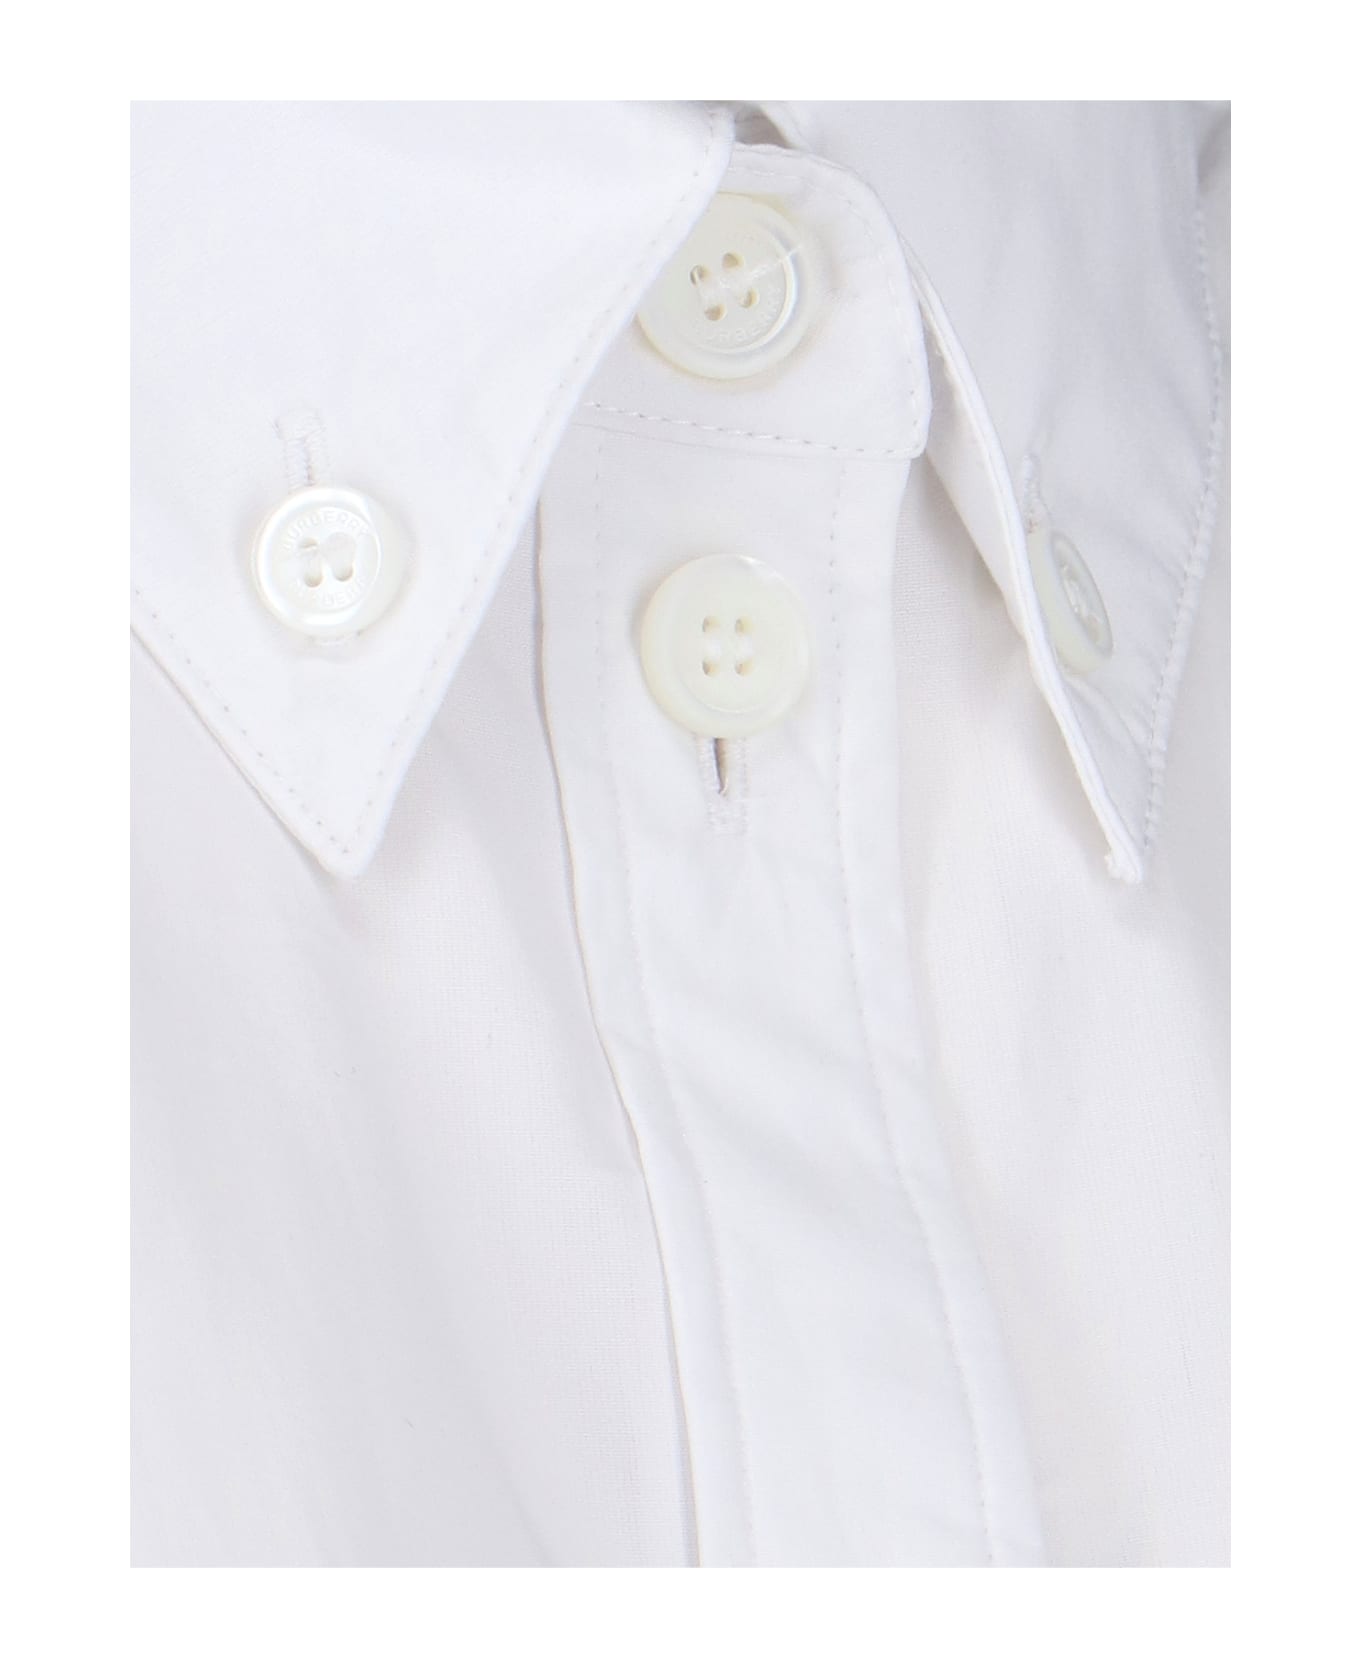 Burberry Ivanna Shirt - White シャツ